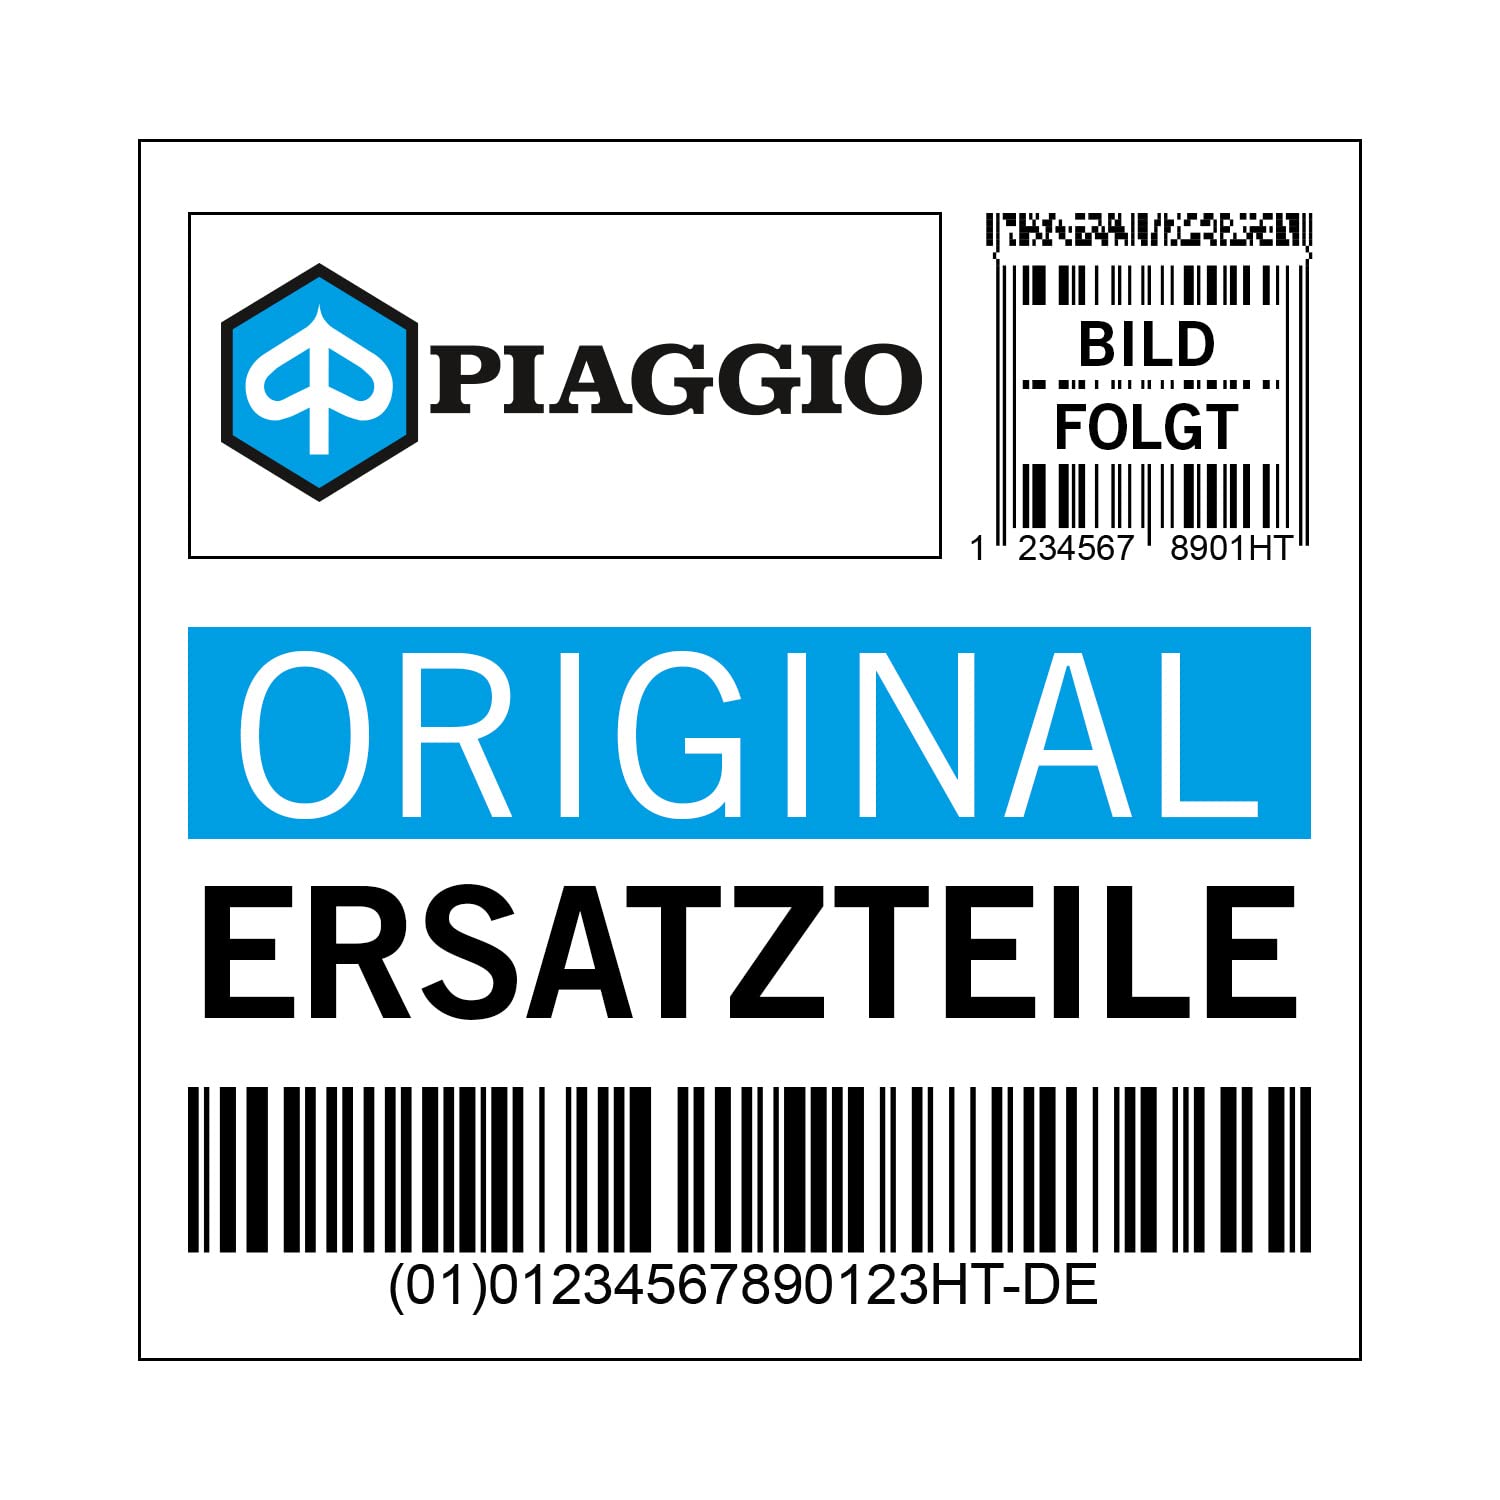 Dekor Piaggio Emblem, 125 für Liberty RST, 656741 von Maxtuned